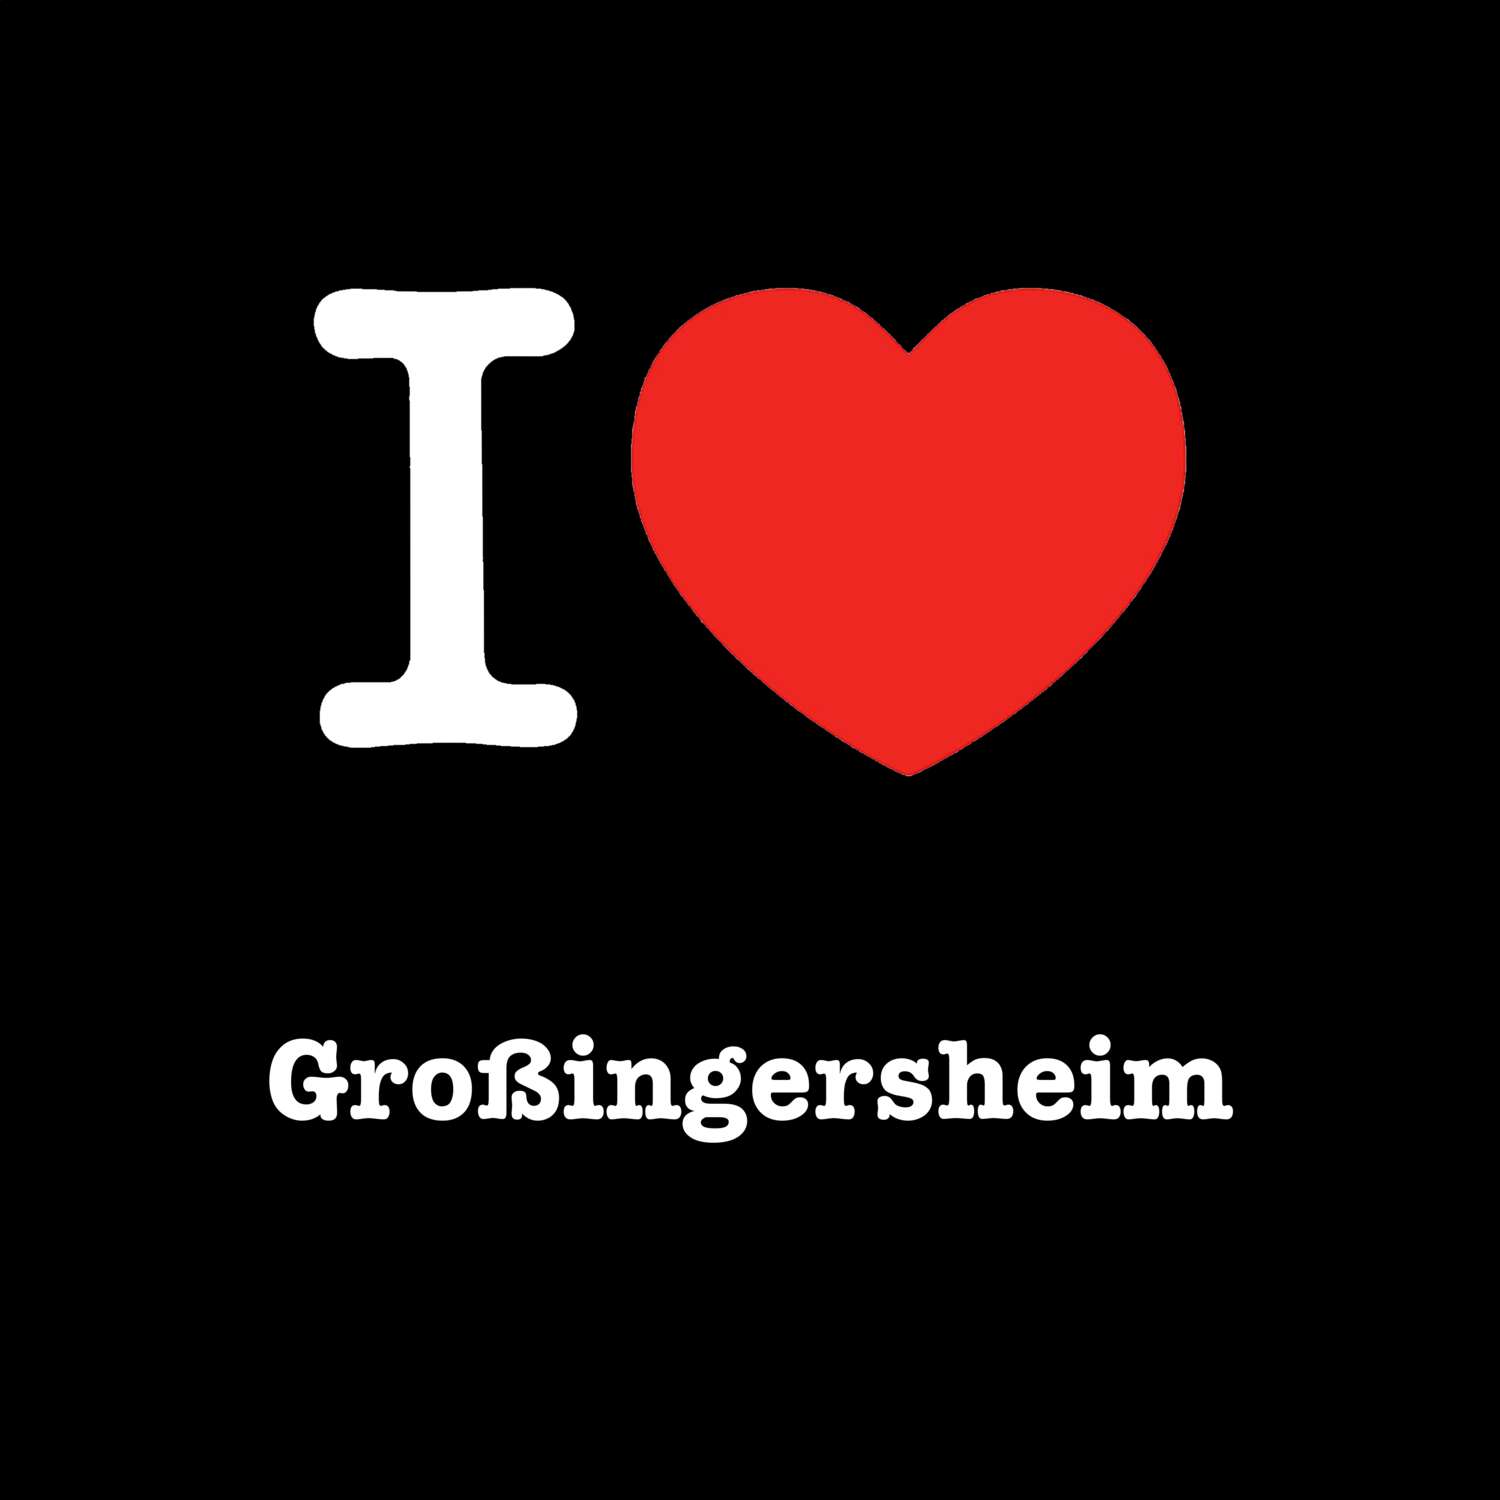 Großingersheim T-Shirt »I love«